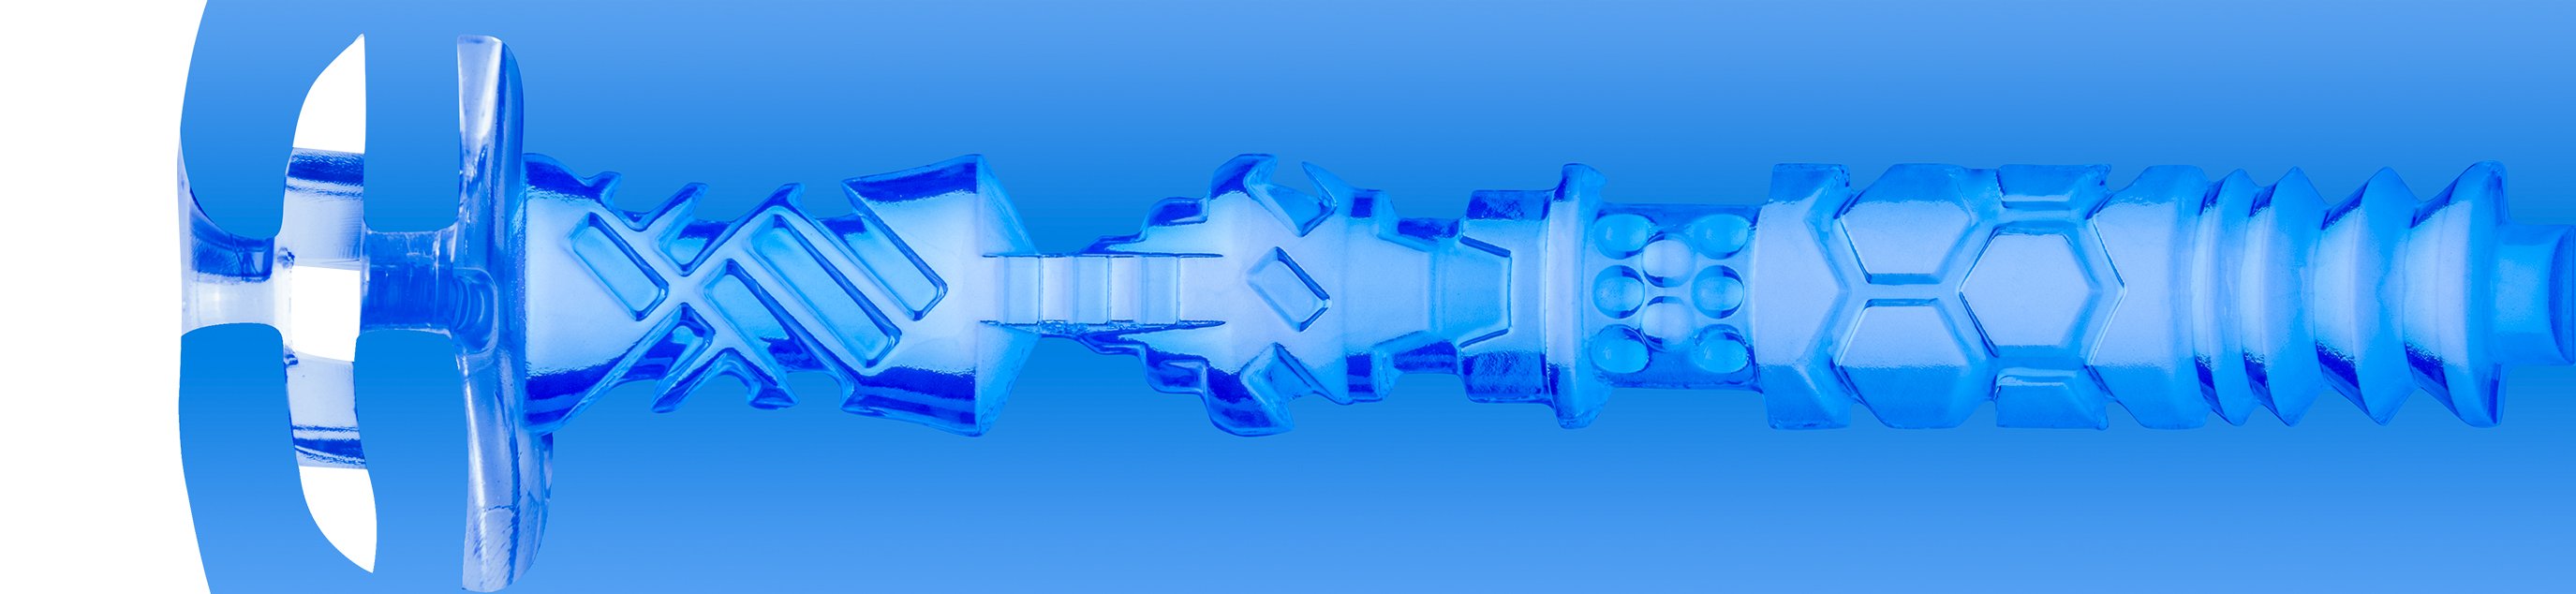 TURBO：イグニッション・ブルーアイス(TURBO: Ignition Blue Ice)の内部構造